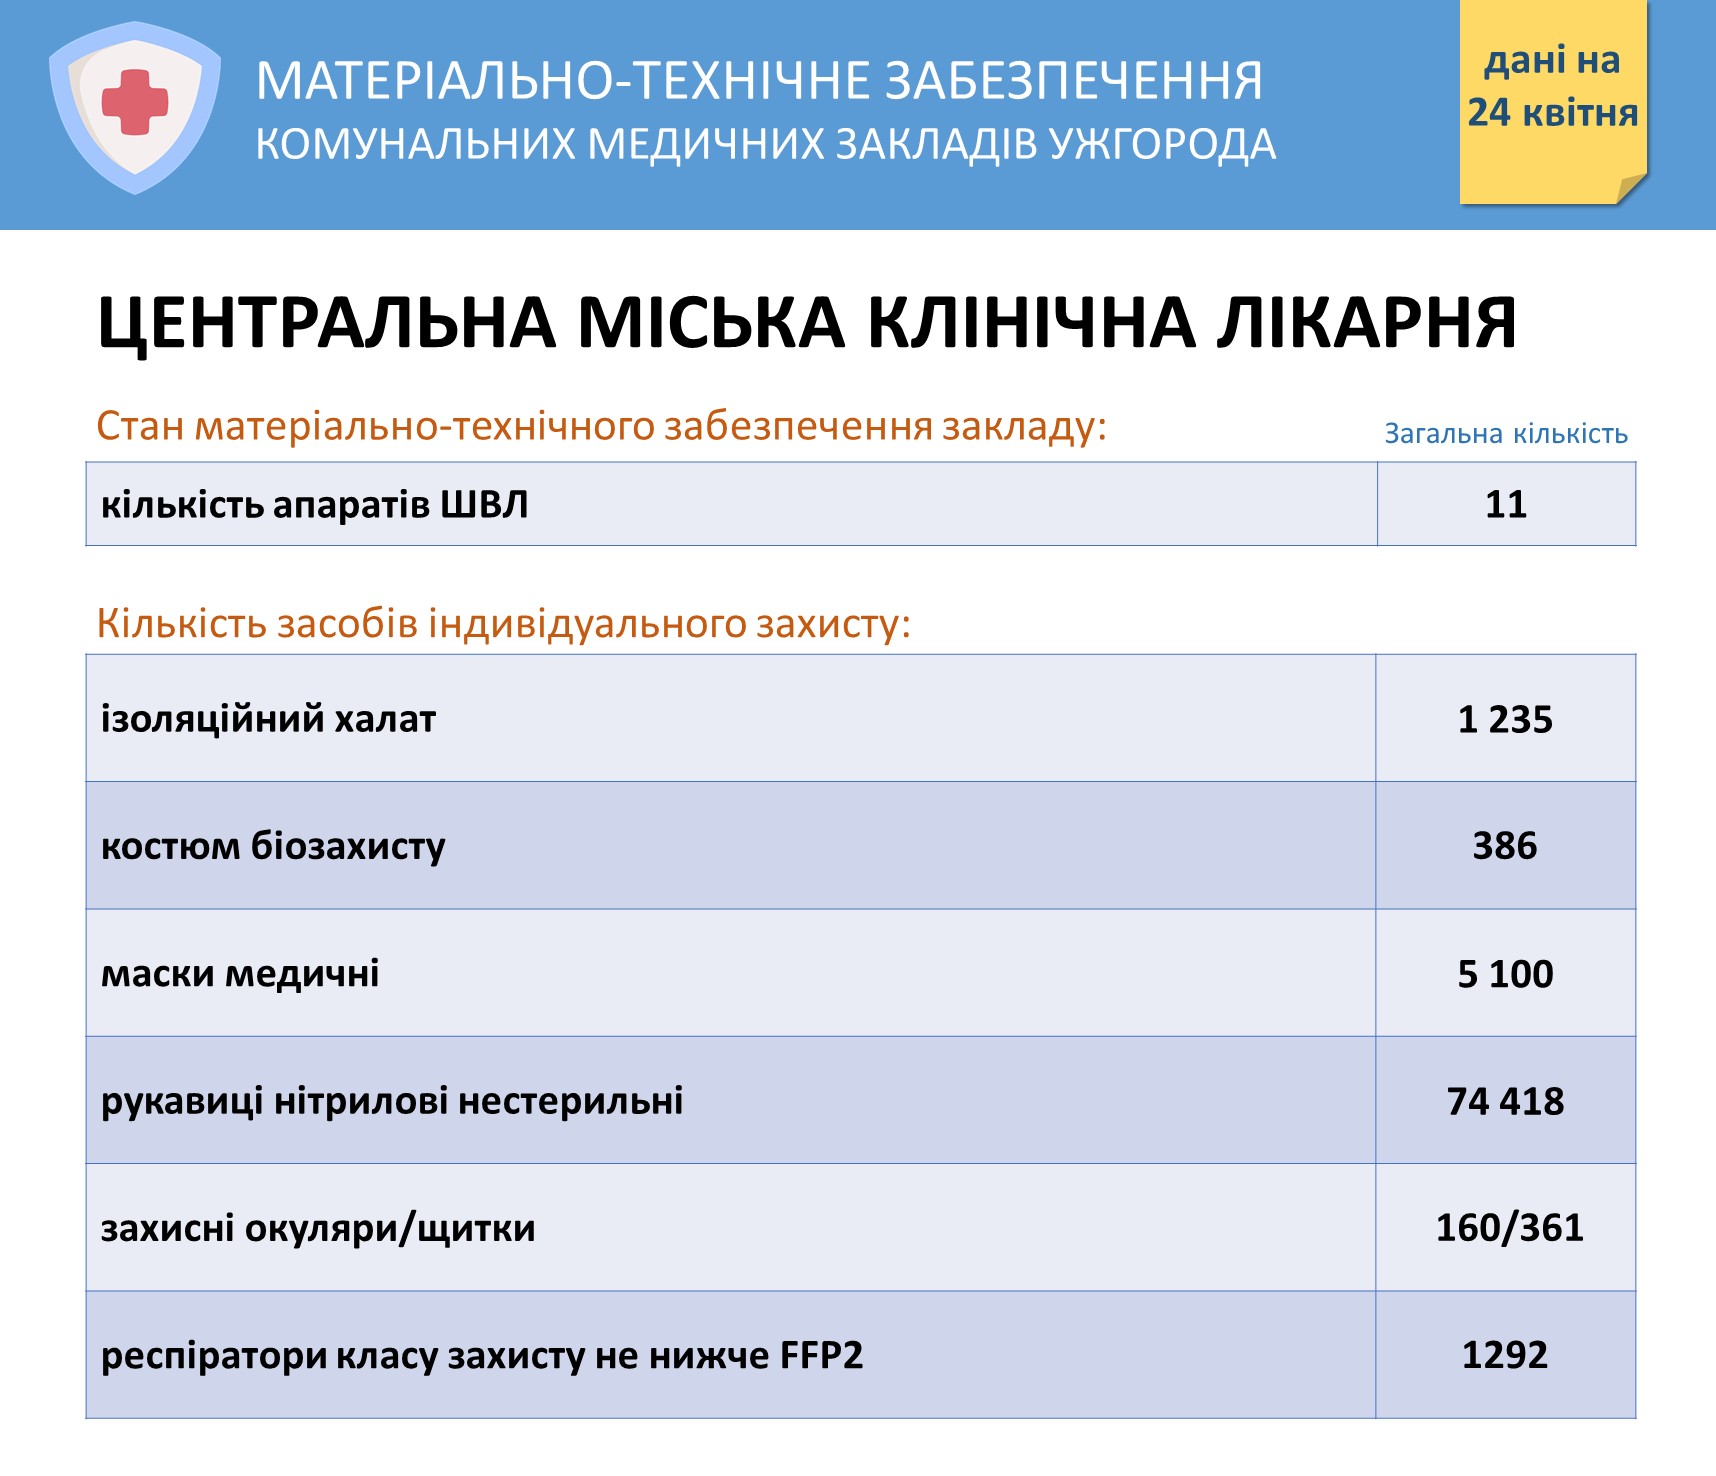 Перелік та кількість засобів захисту, які є в комунальних медзакладах Ужгорода на 24 квітня 